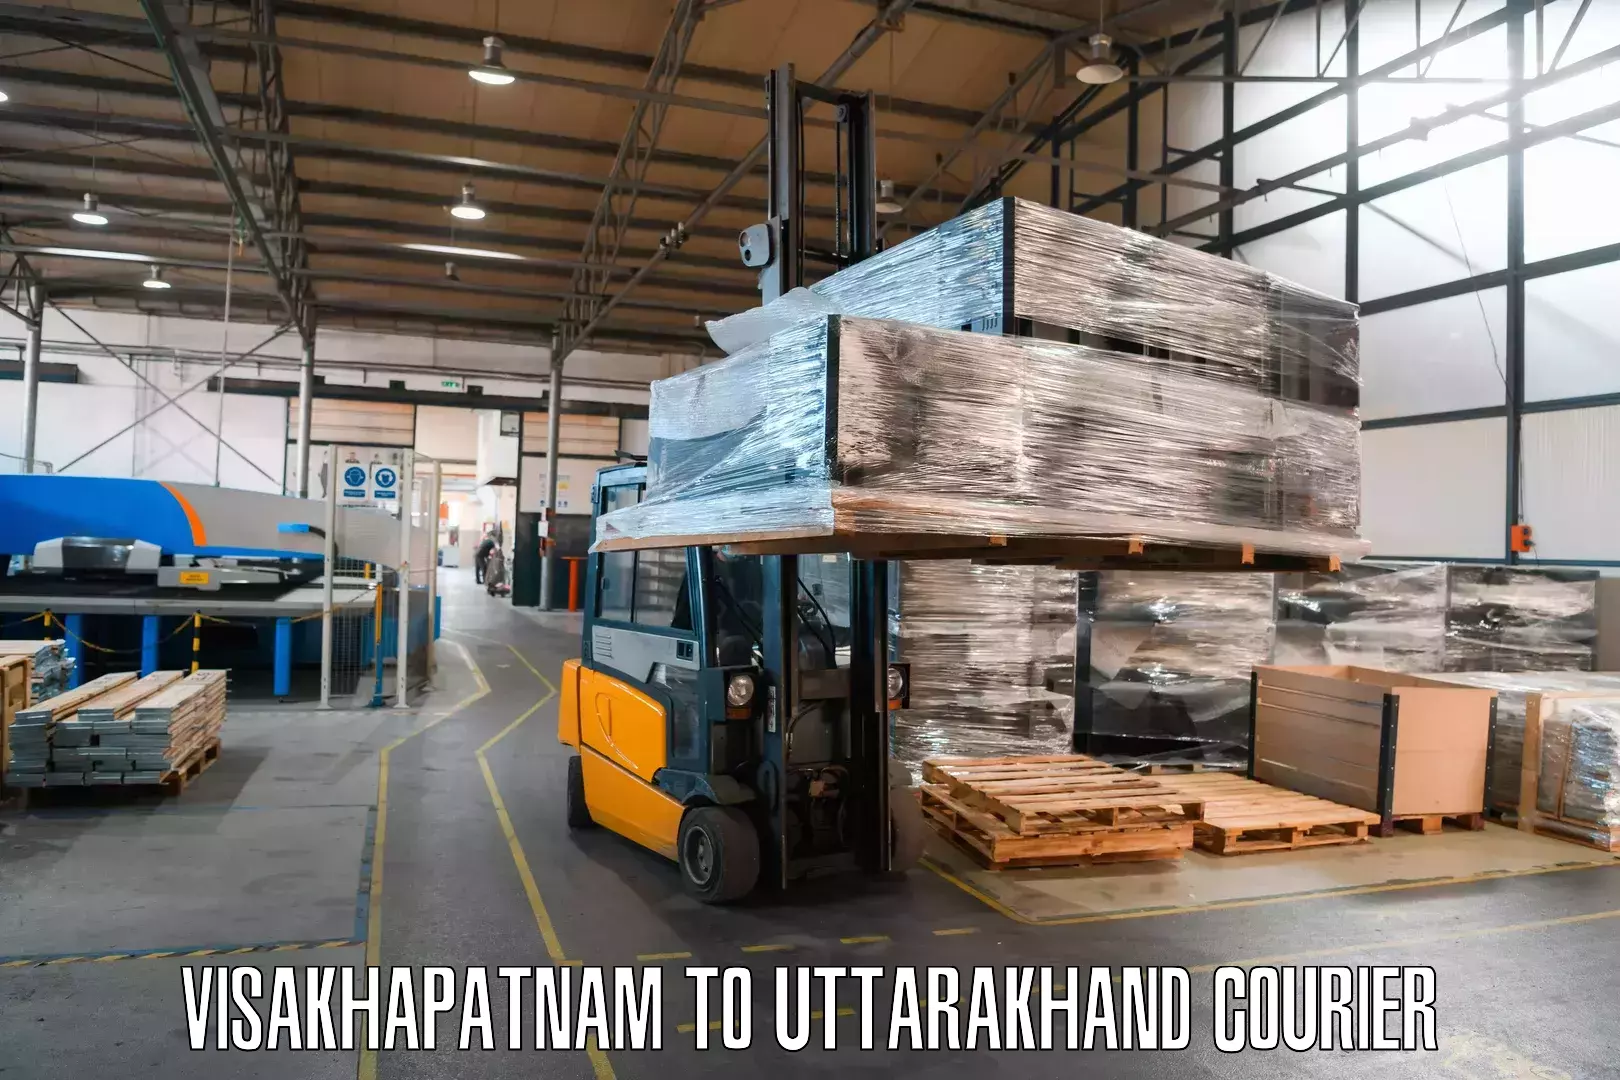 Flexible parcel services Visakhapatnam to Ranikhet